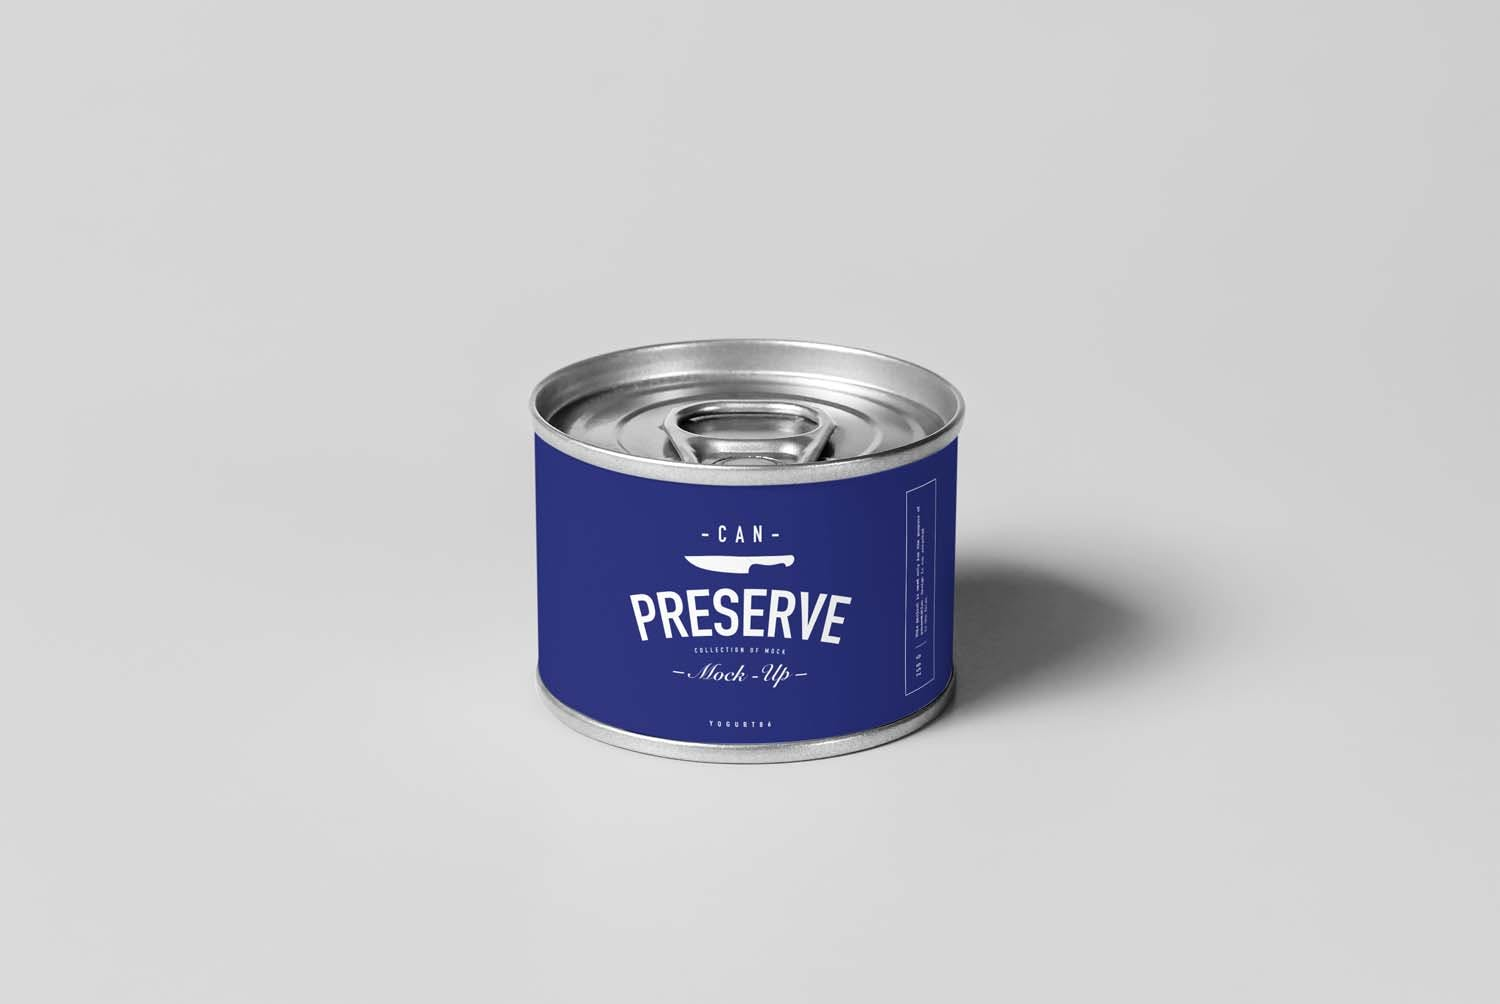 4753 多规格易拉罐速食罐头食品产品包装空白贴图ps样机素材设计模板 Can Preserve Mock-up@GOOODME.COM